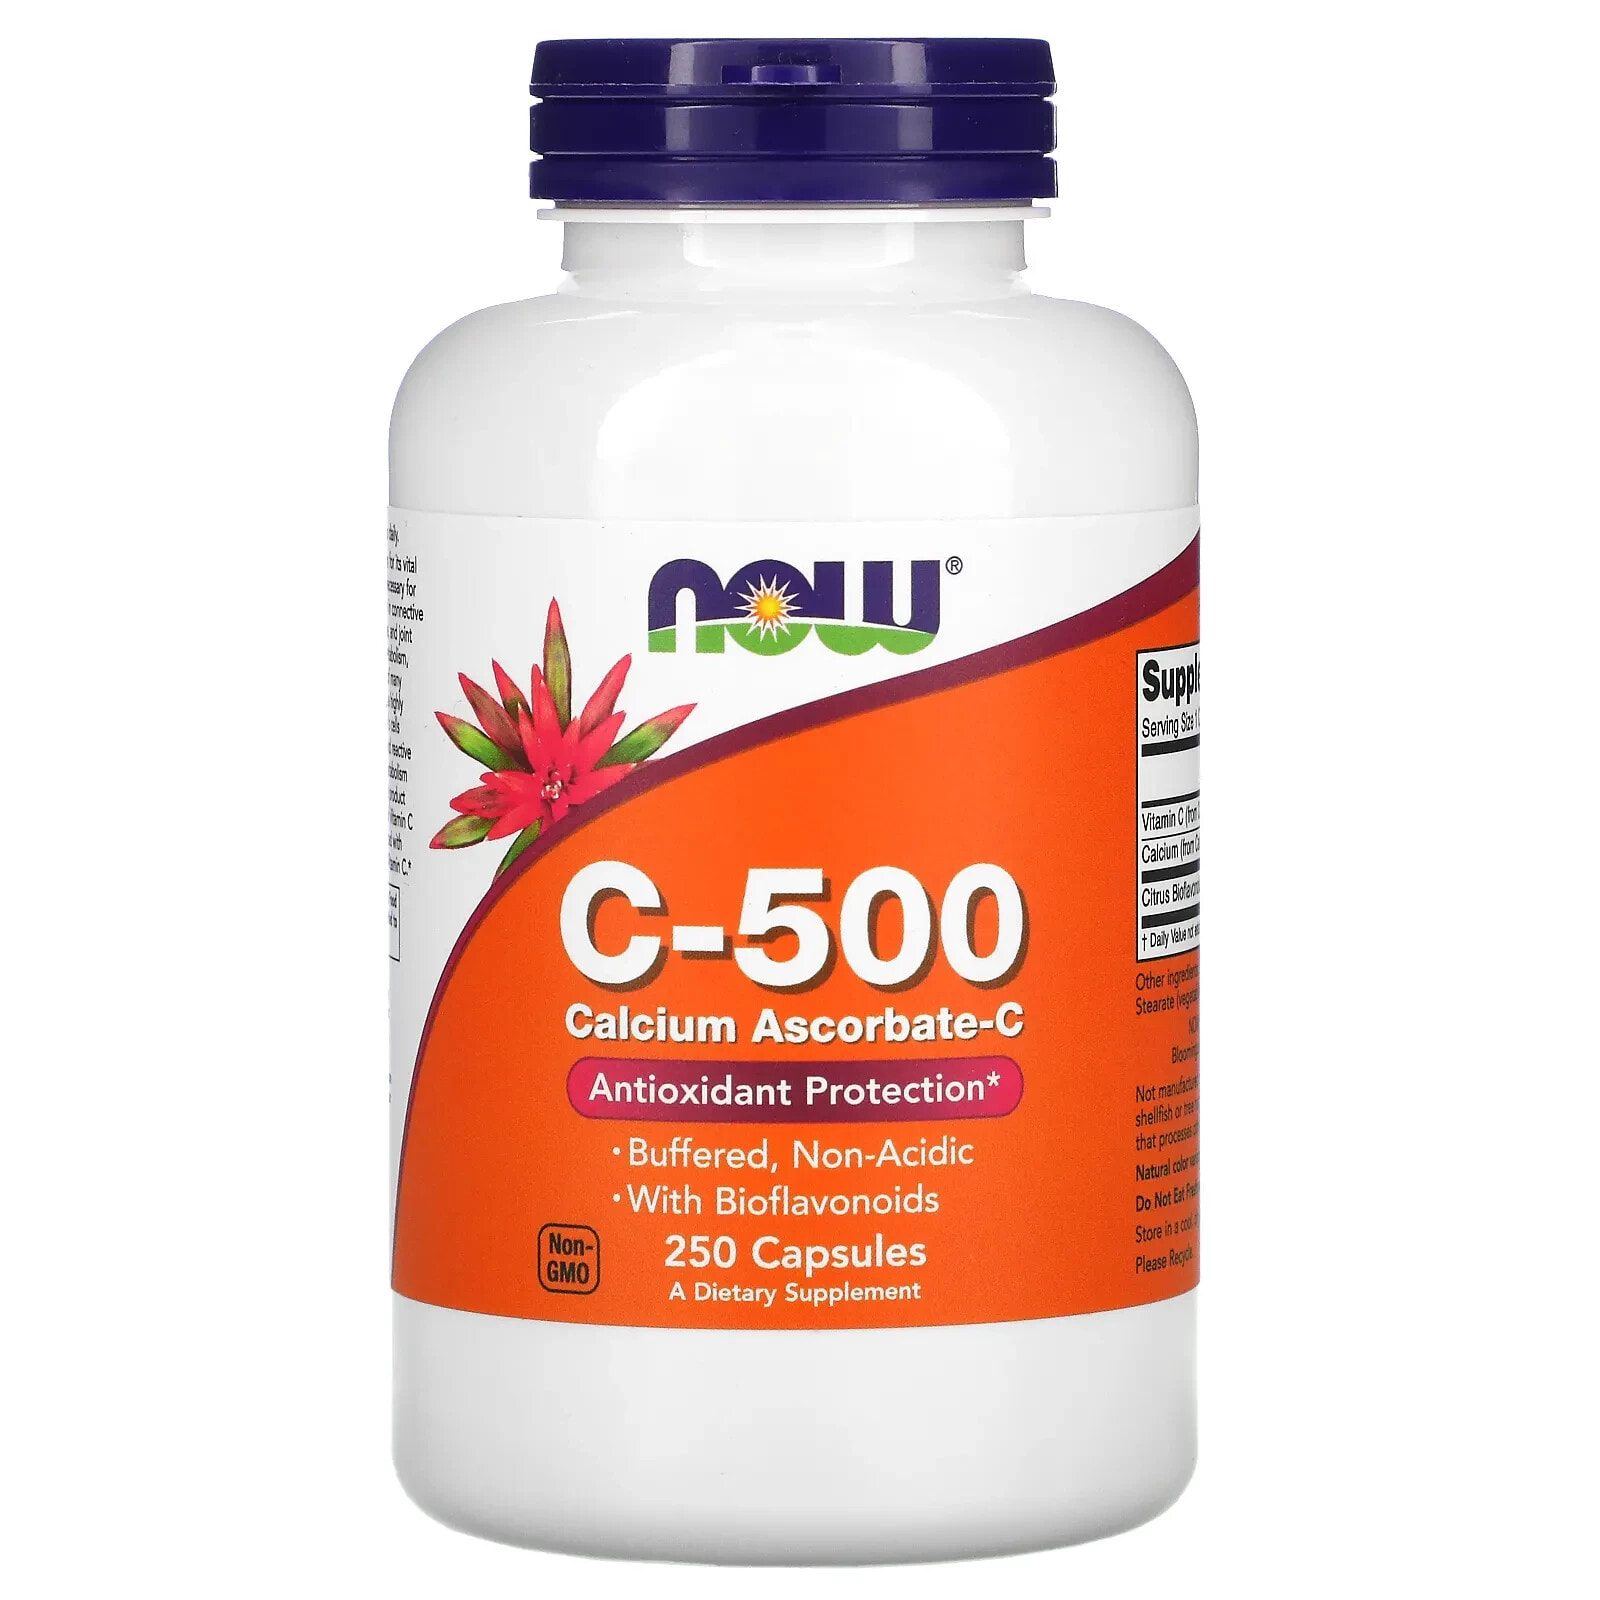 C-500, Calcium Ascorbate-C, 250 Capsules